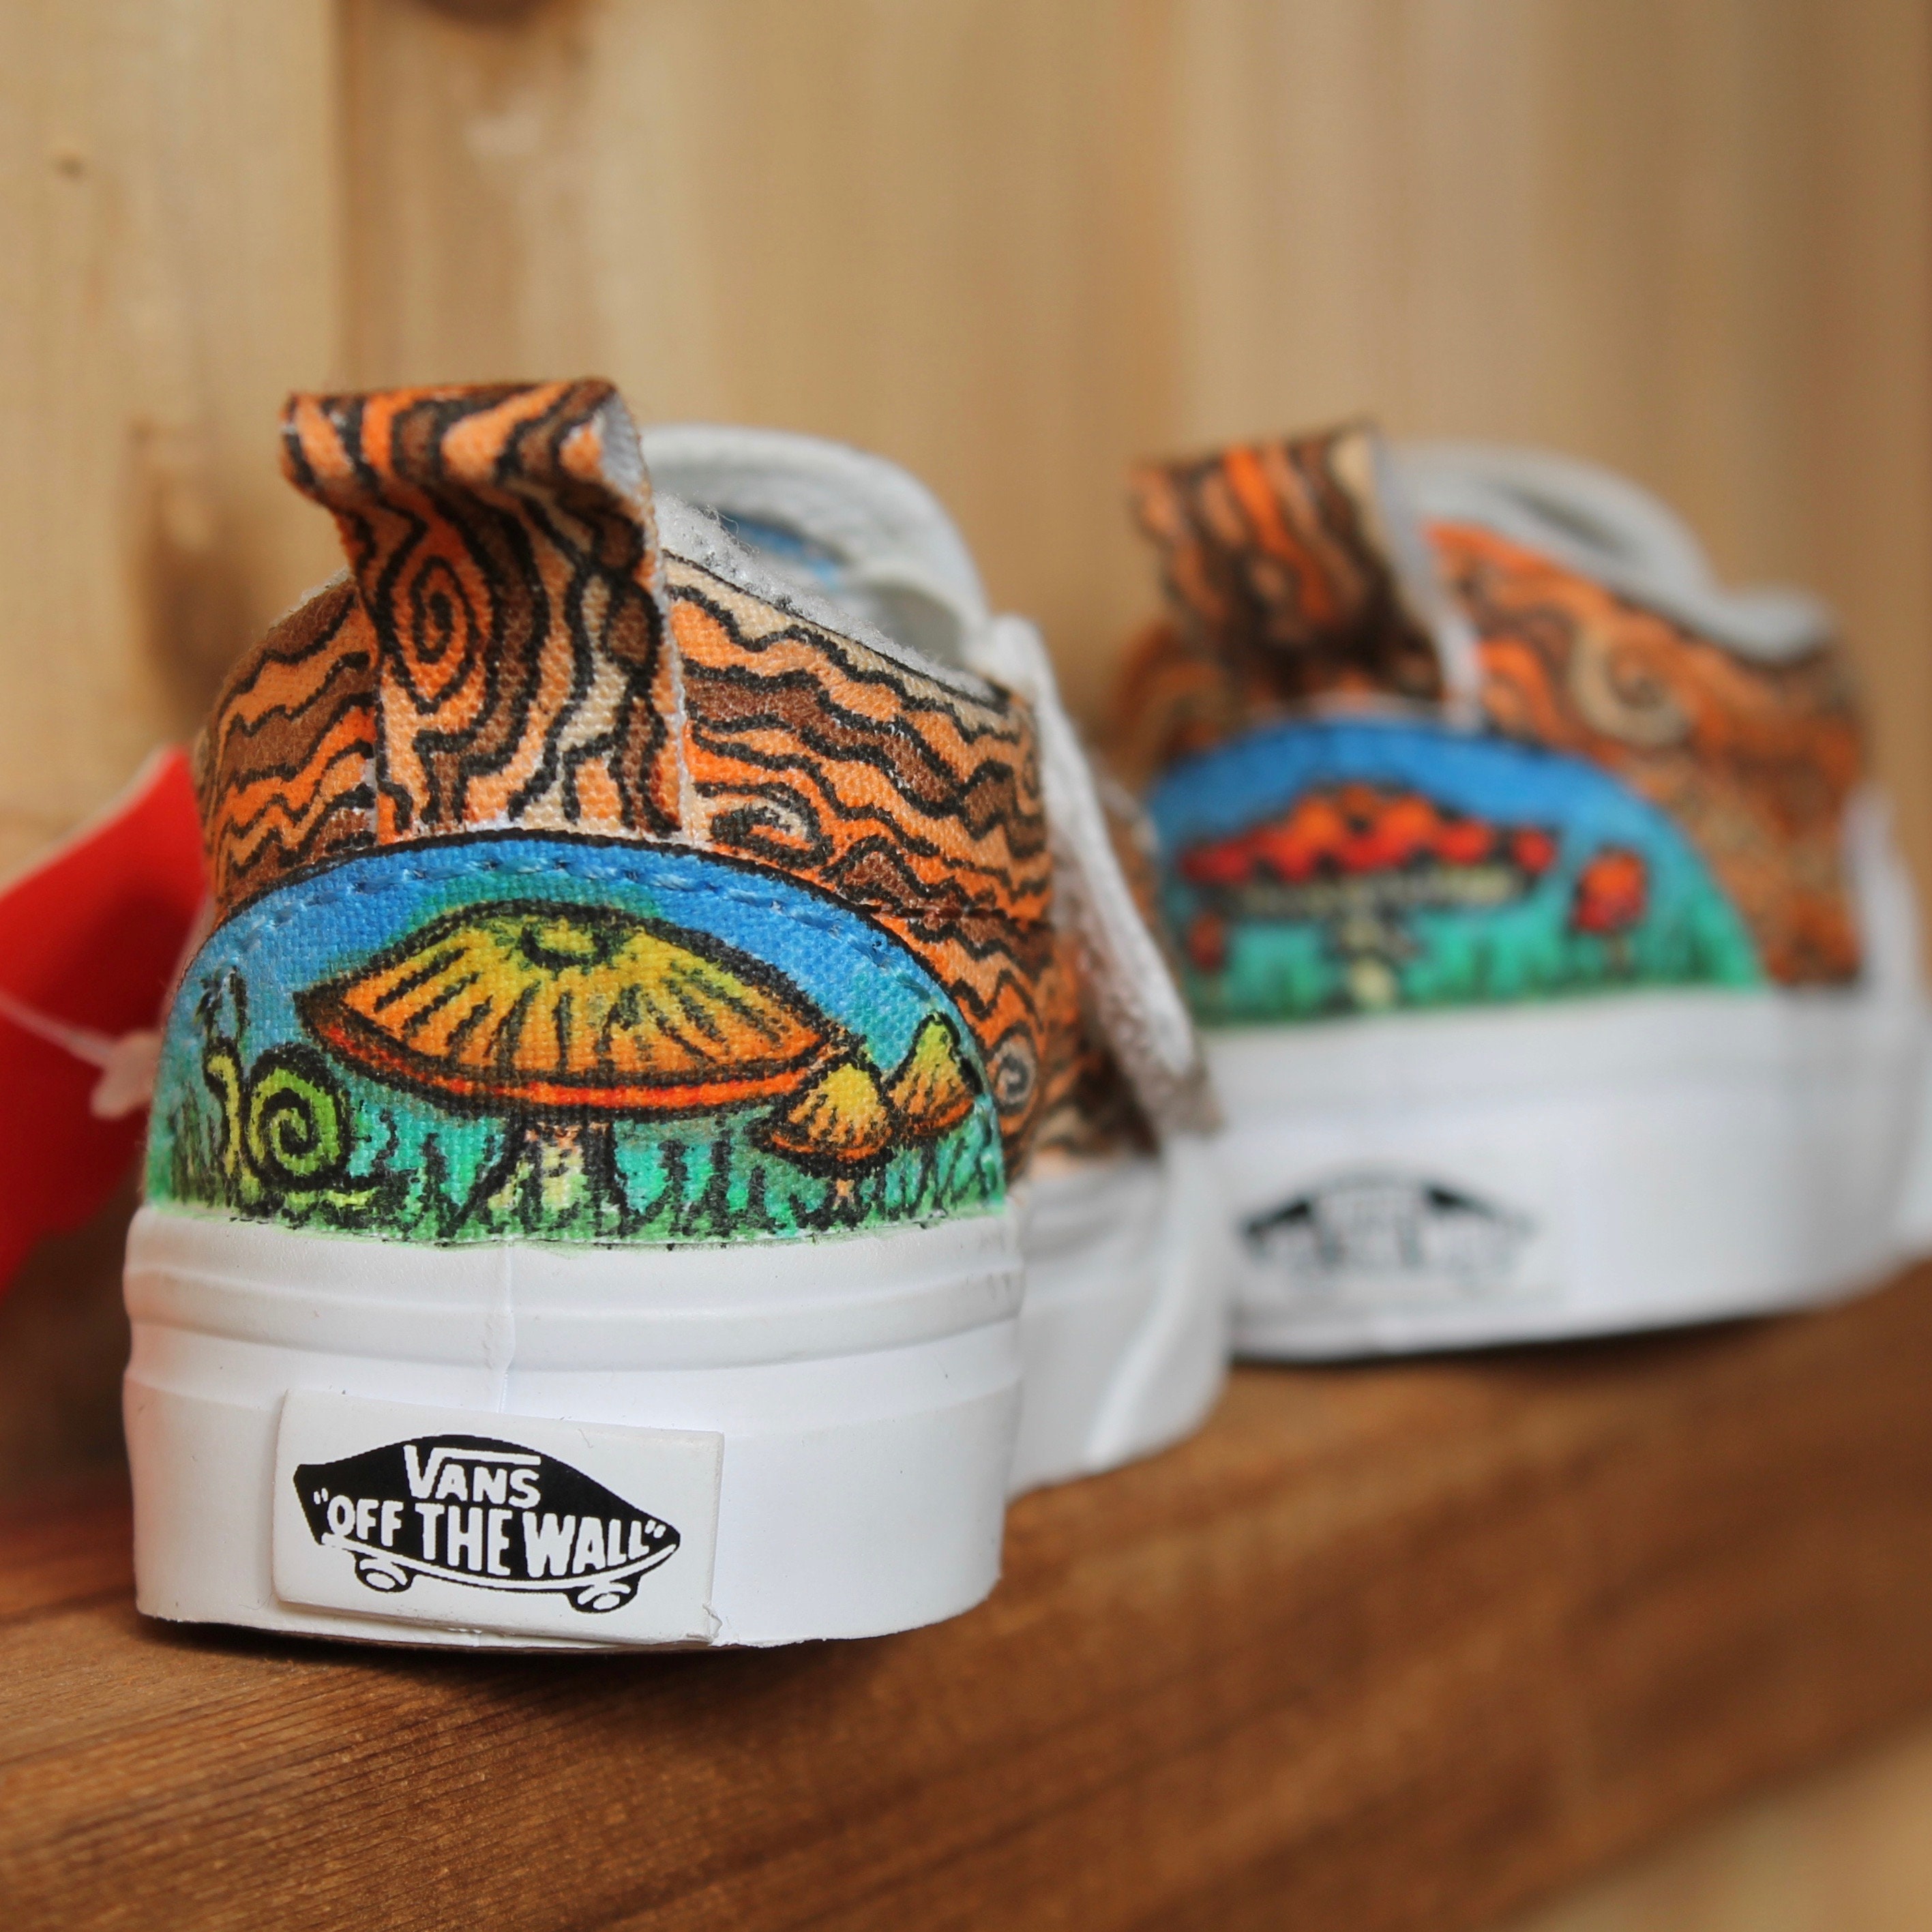 Mushroom themed custom Vans Slip On Sneakers - ShopperBoard